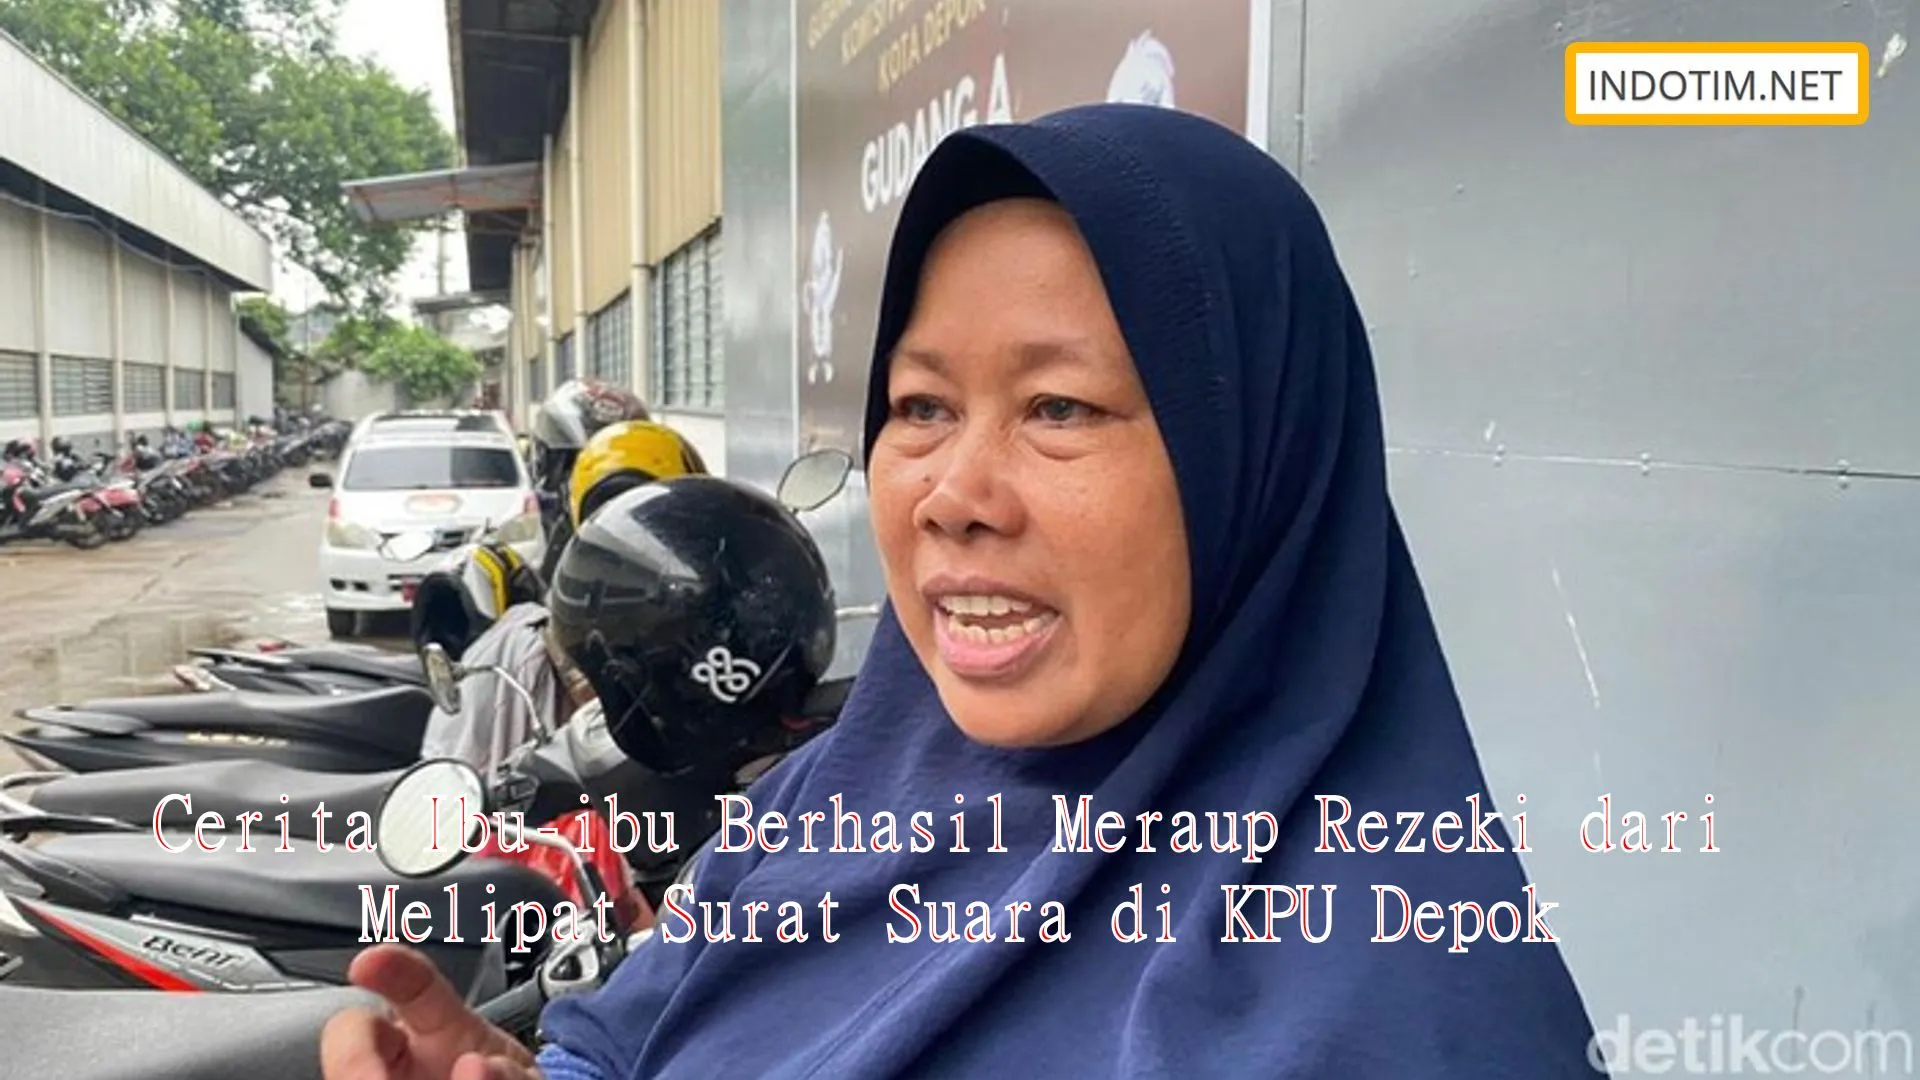 Cerita Ibu-ibu Berhasil Meraup Rezeki dari Melipat Surat Suara di KPU Depok